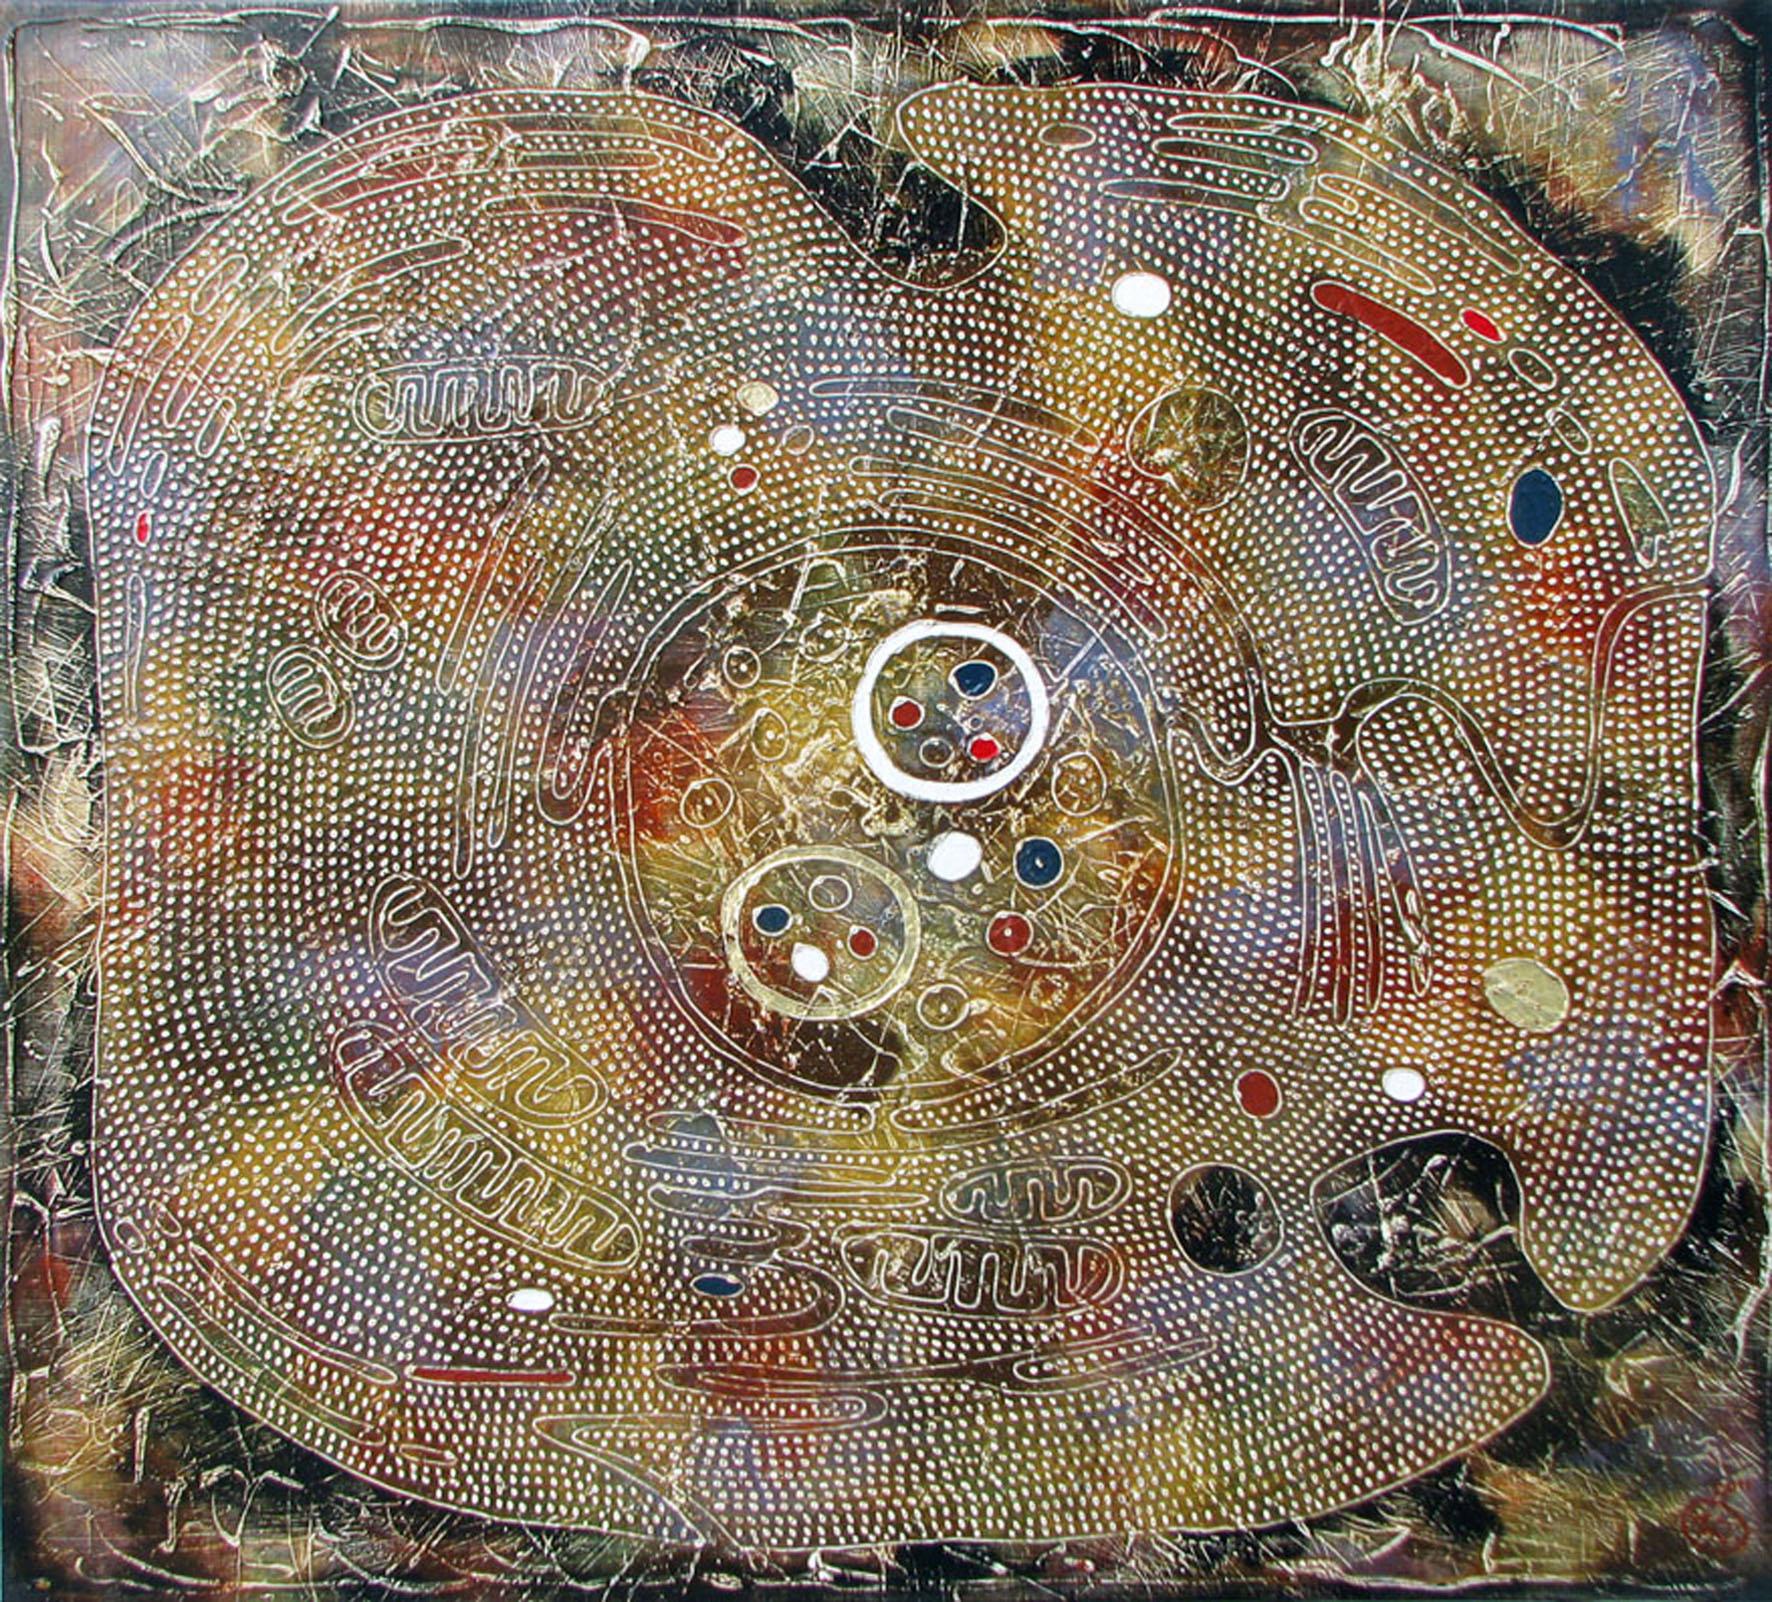 Cette œuvre d'art fait partie du projet REFLEXUS.

La peinture est réalisée selon la technique de l'auteur, à savoir la peinture acrylique sur toile à base de Vasily Zianko, en utilisant une variété de textures, de lavis, de glacis les plus fins, de